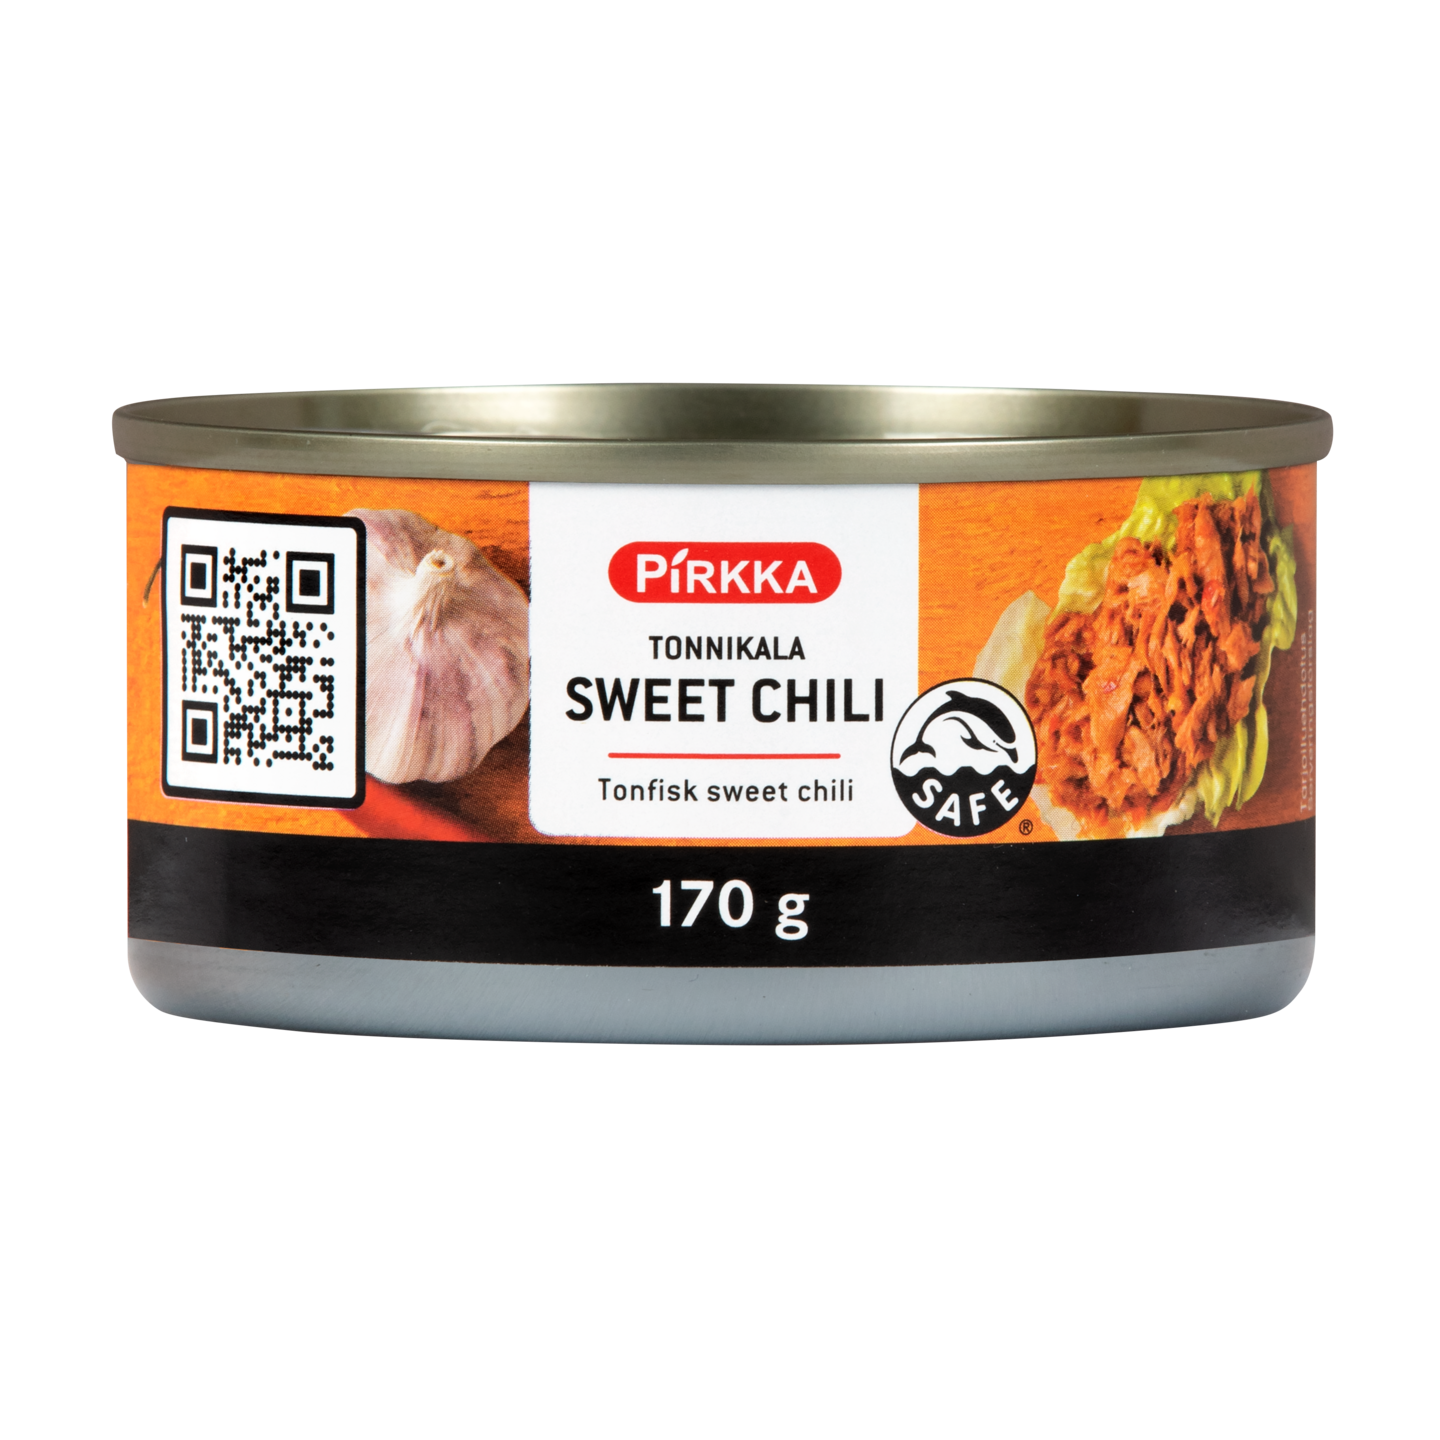 Pirkka tonnikala sweet chili 170g | K-Ruoka Verkkokauppa